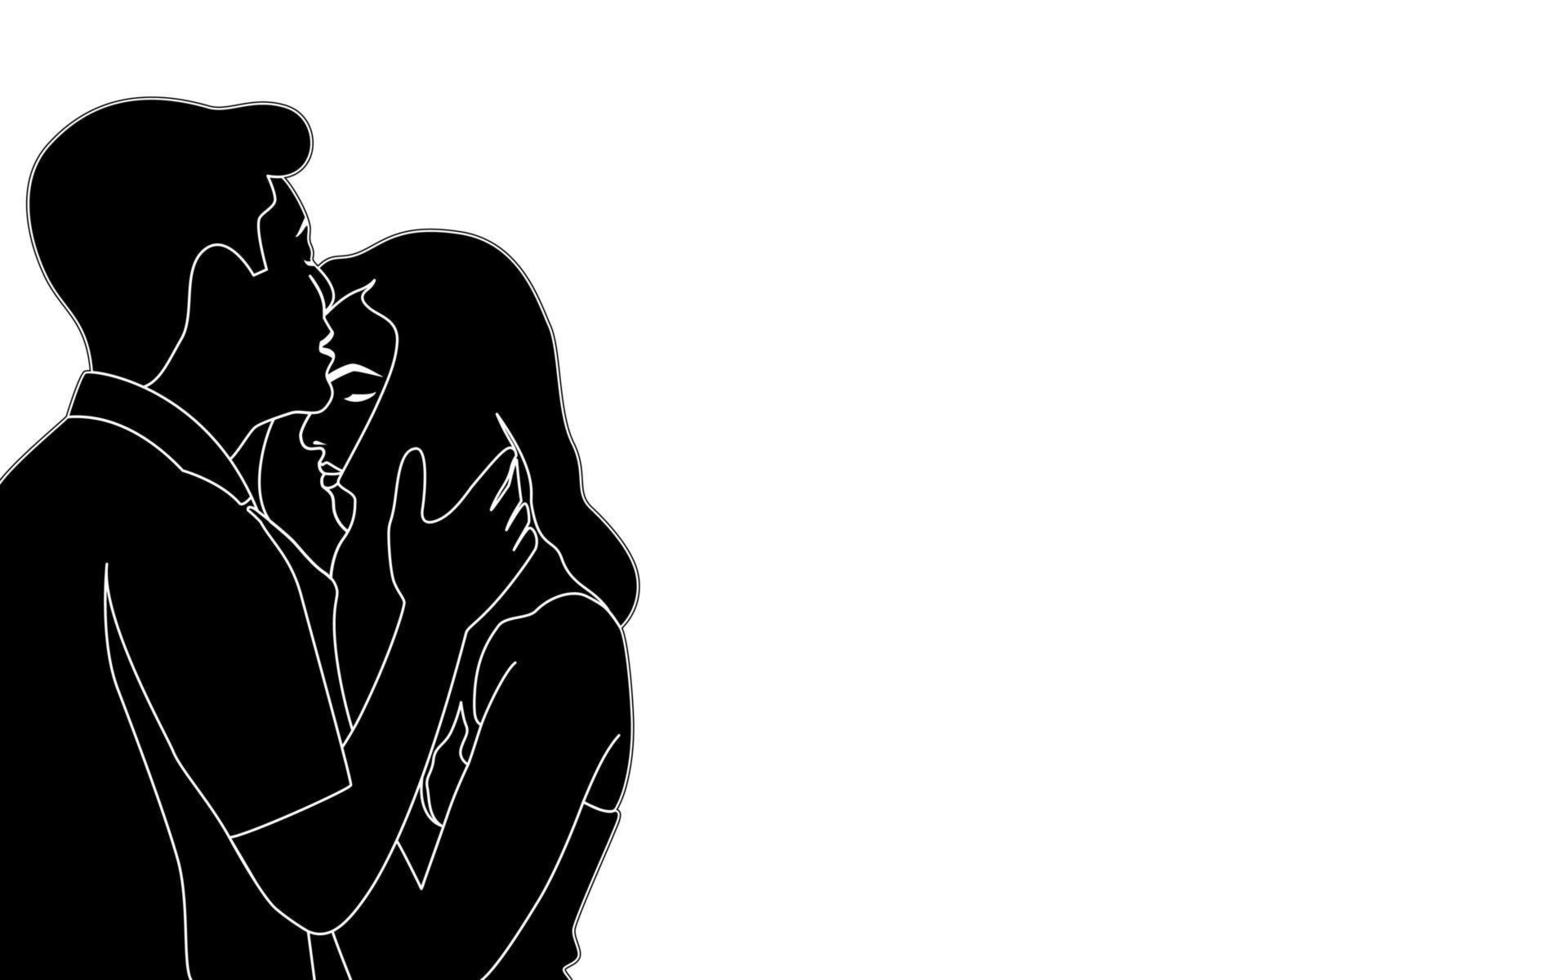 pojke kysser på flickor panna, vacker tonåring par karaktär siluett vektorillustration. vektor